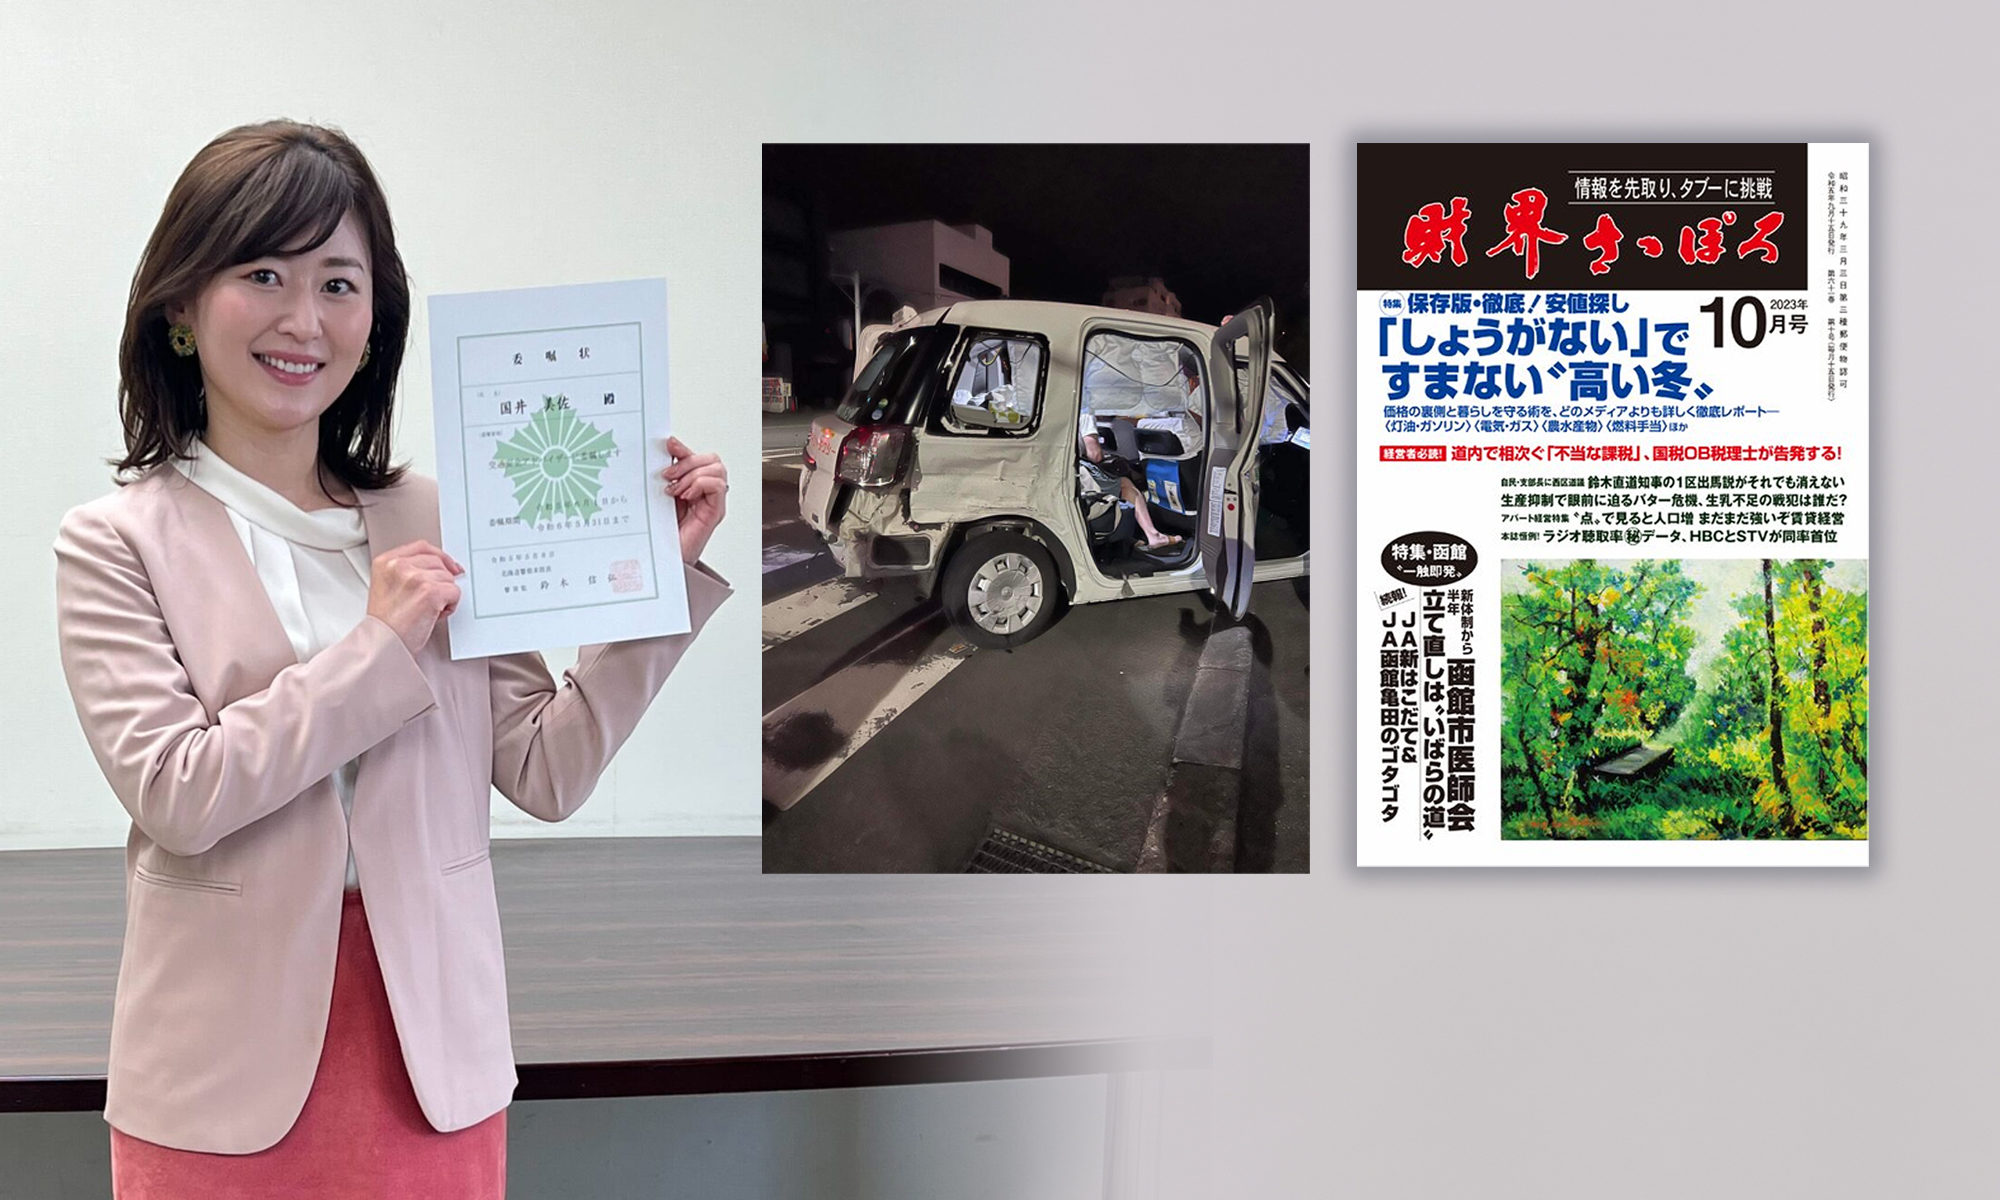 国井美佐の交通事故被害の記事が「財界さっぽろ」に掲載されました。